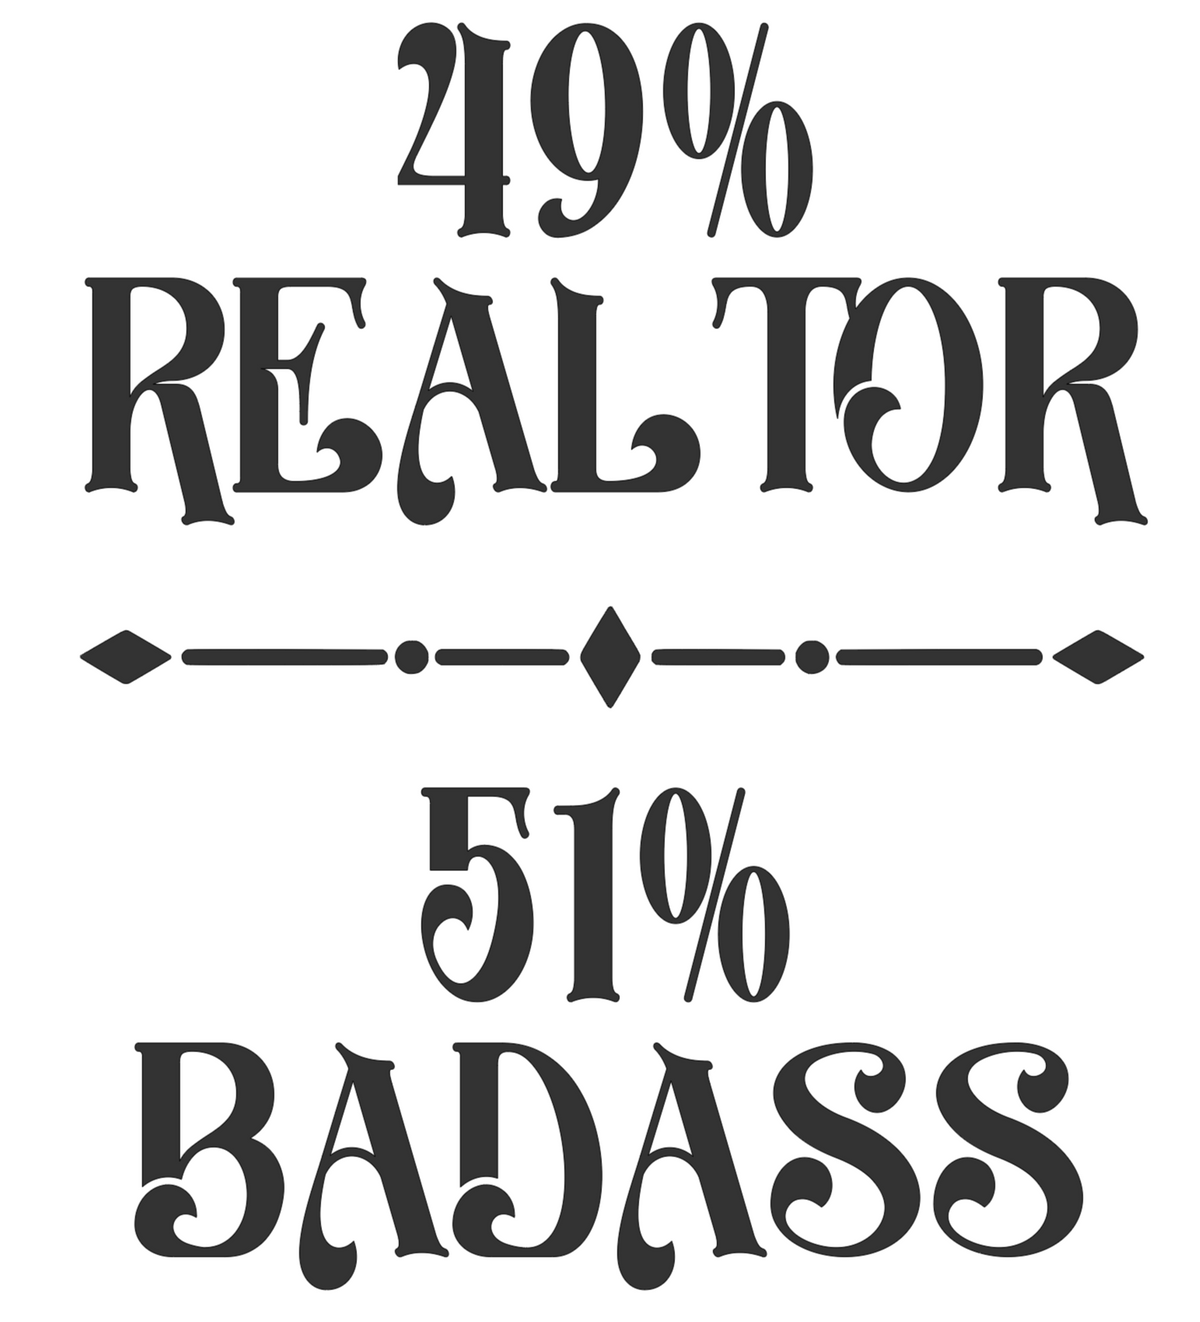 49% Realtor vinyl decal sticker